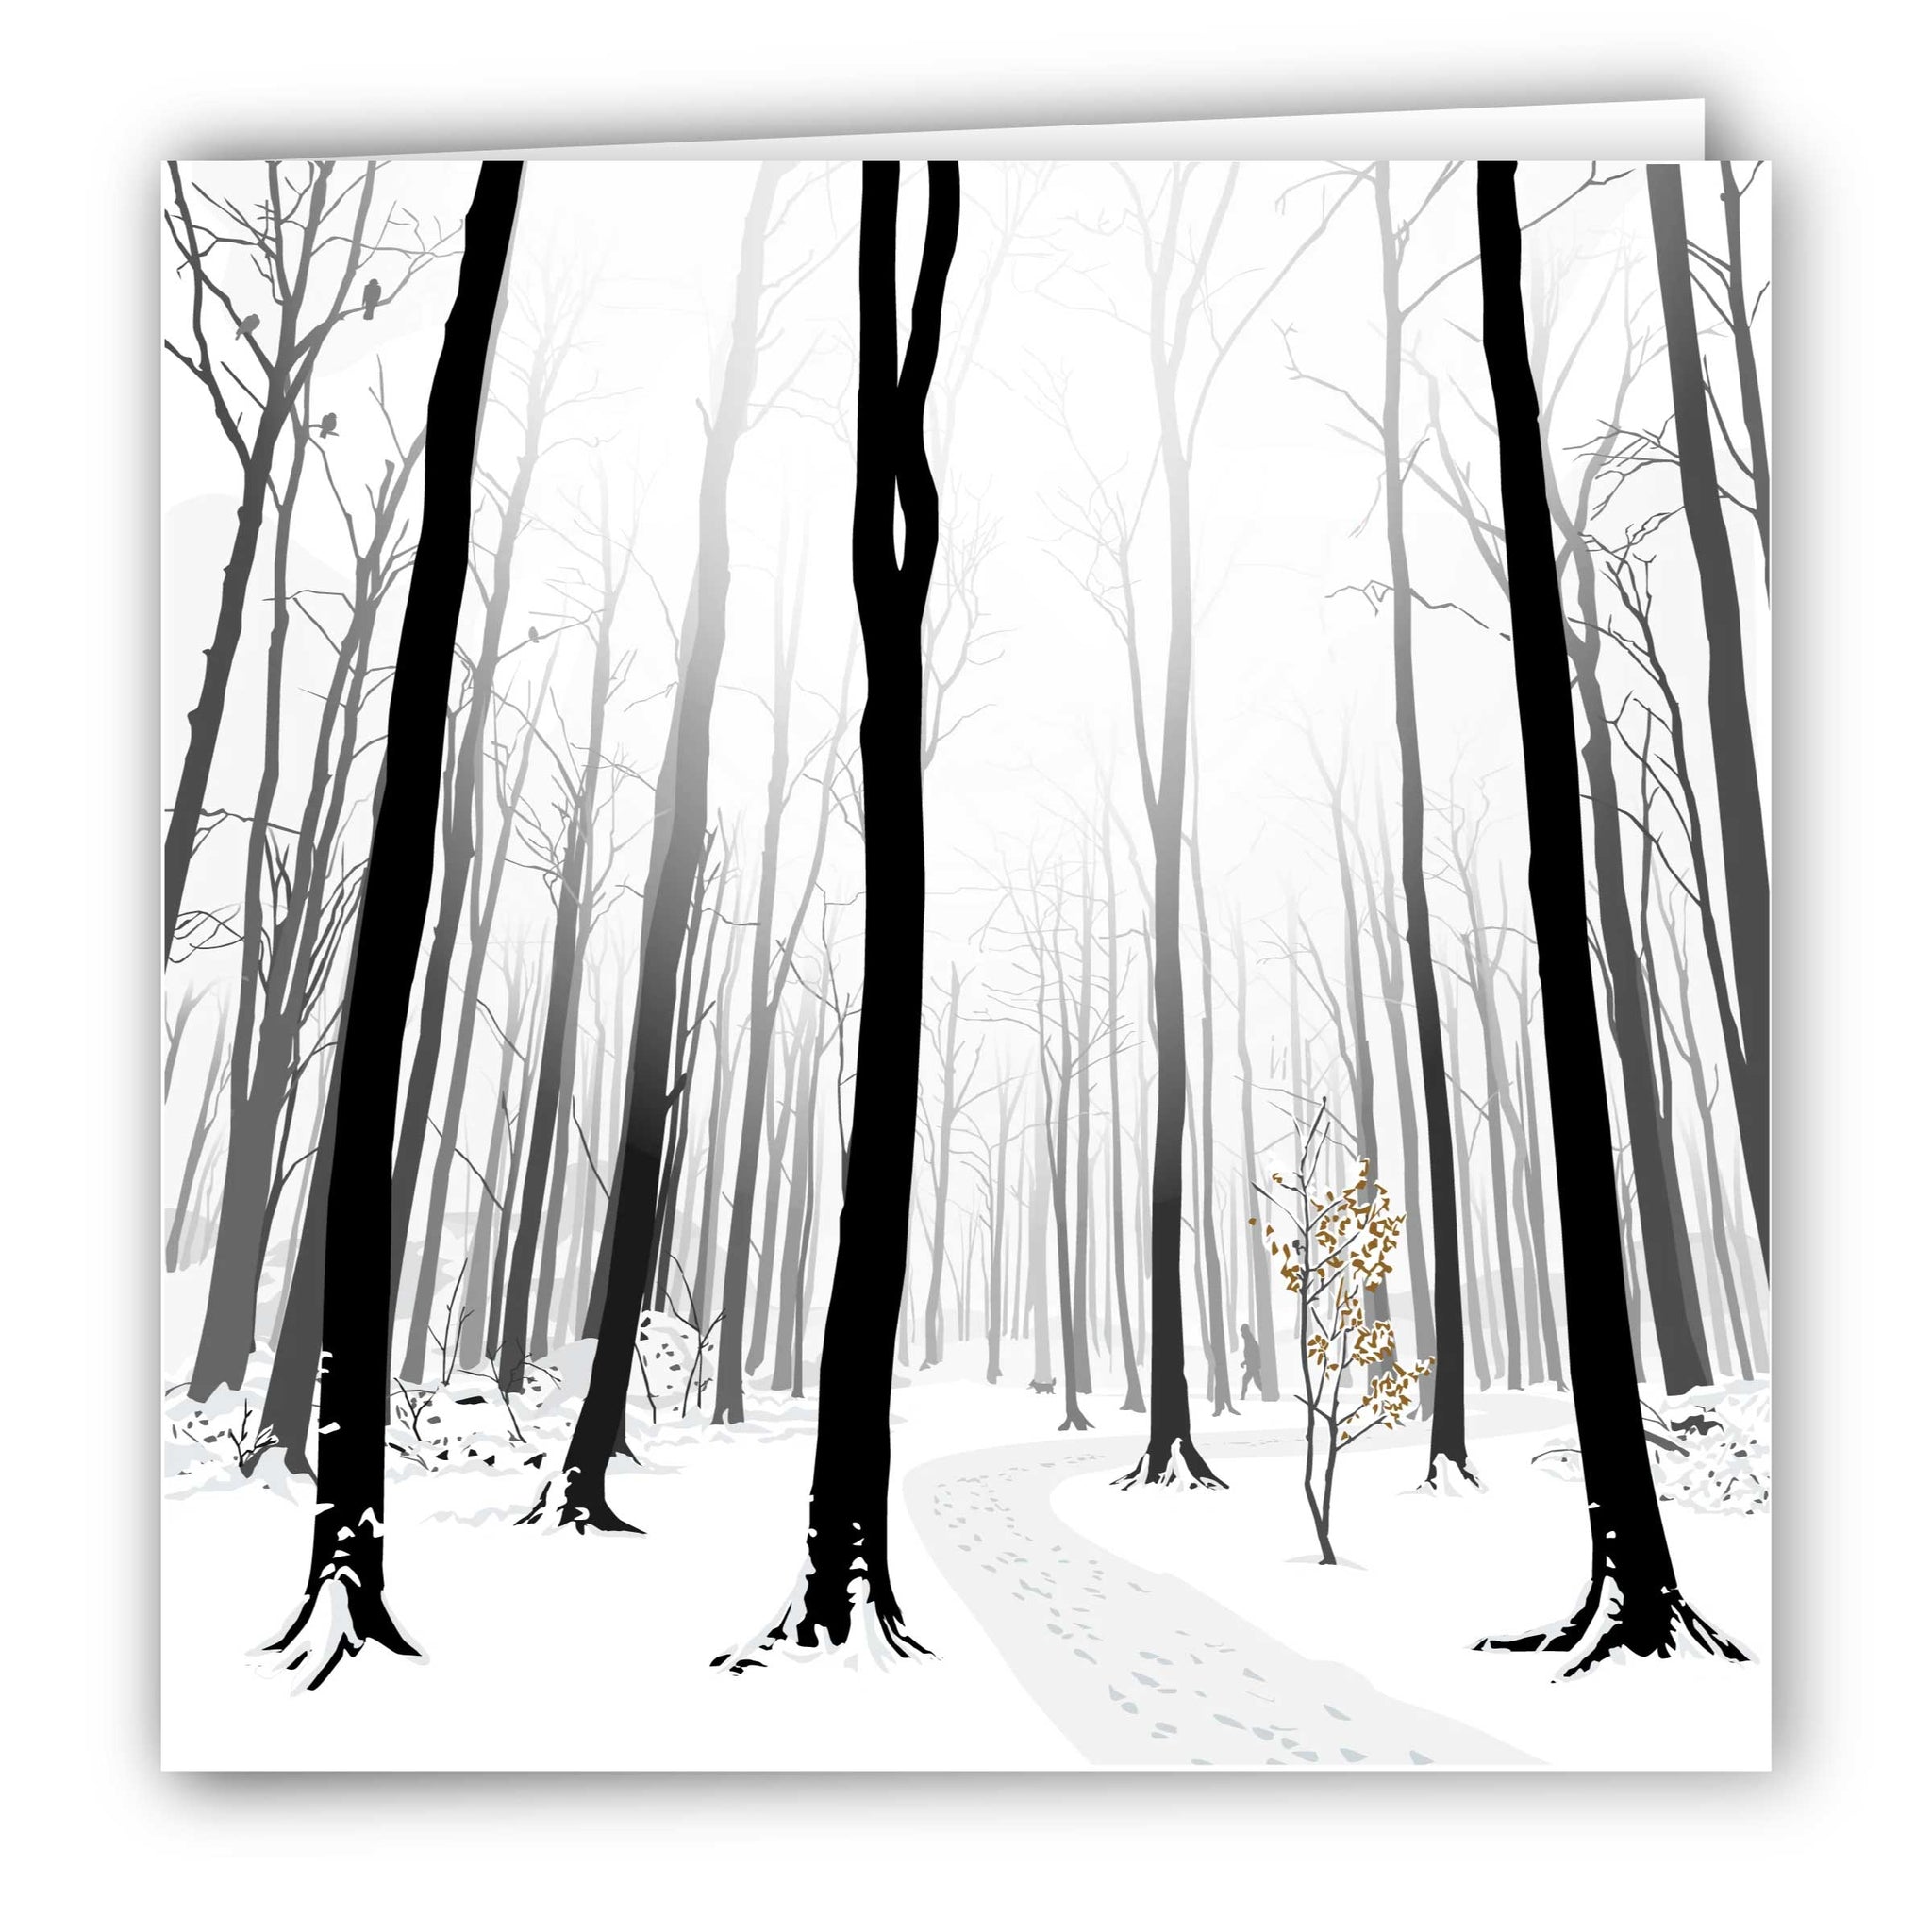 Frith Wood Snowy Blank Card